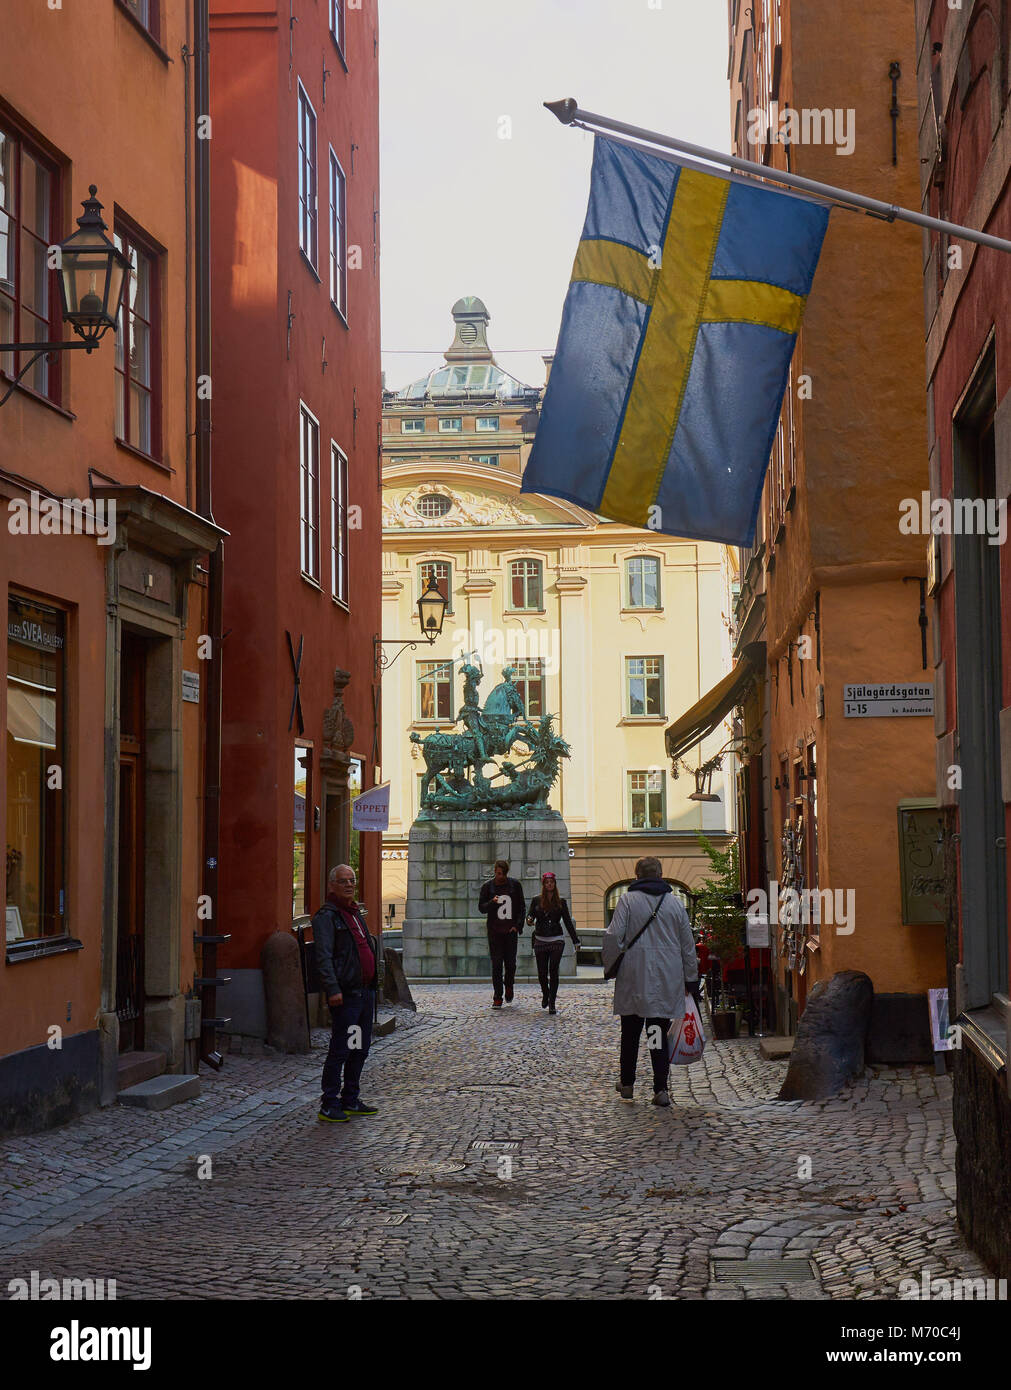 La bandera sueca y la estatua de San Jorge y el dragón, Gamla Stan, Estocolmo, Suecia, Escandinavia. Foto de stock